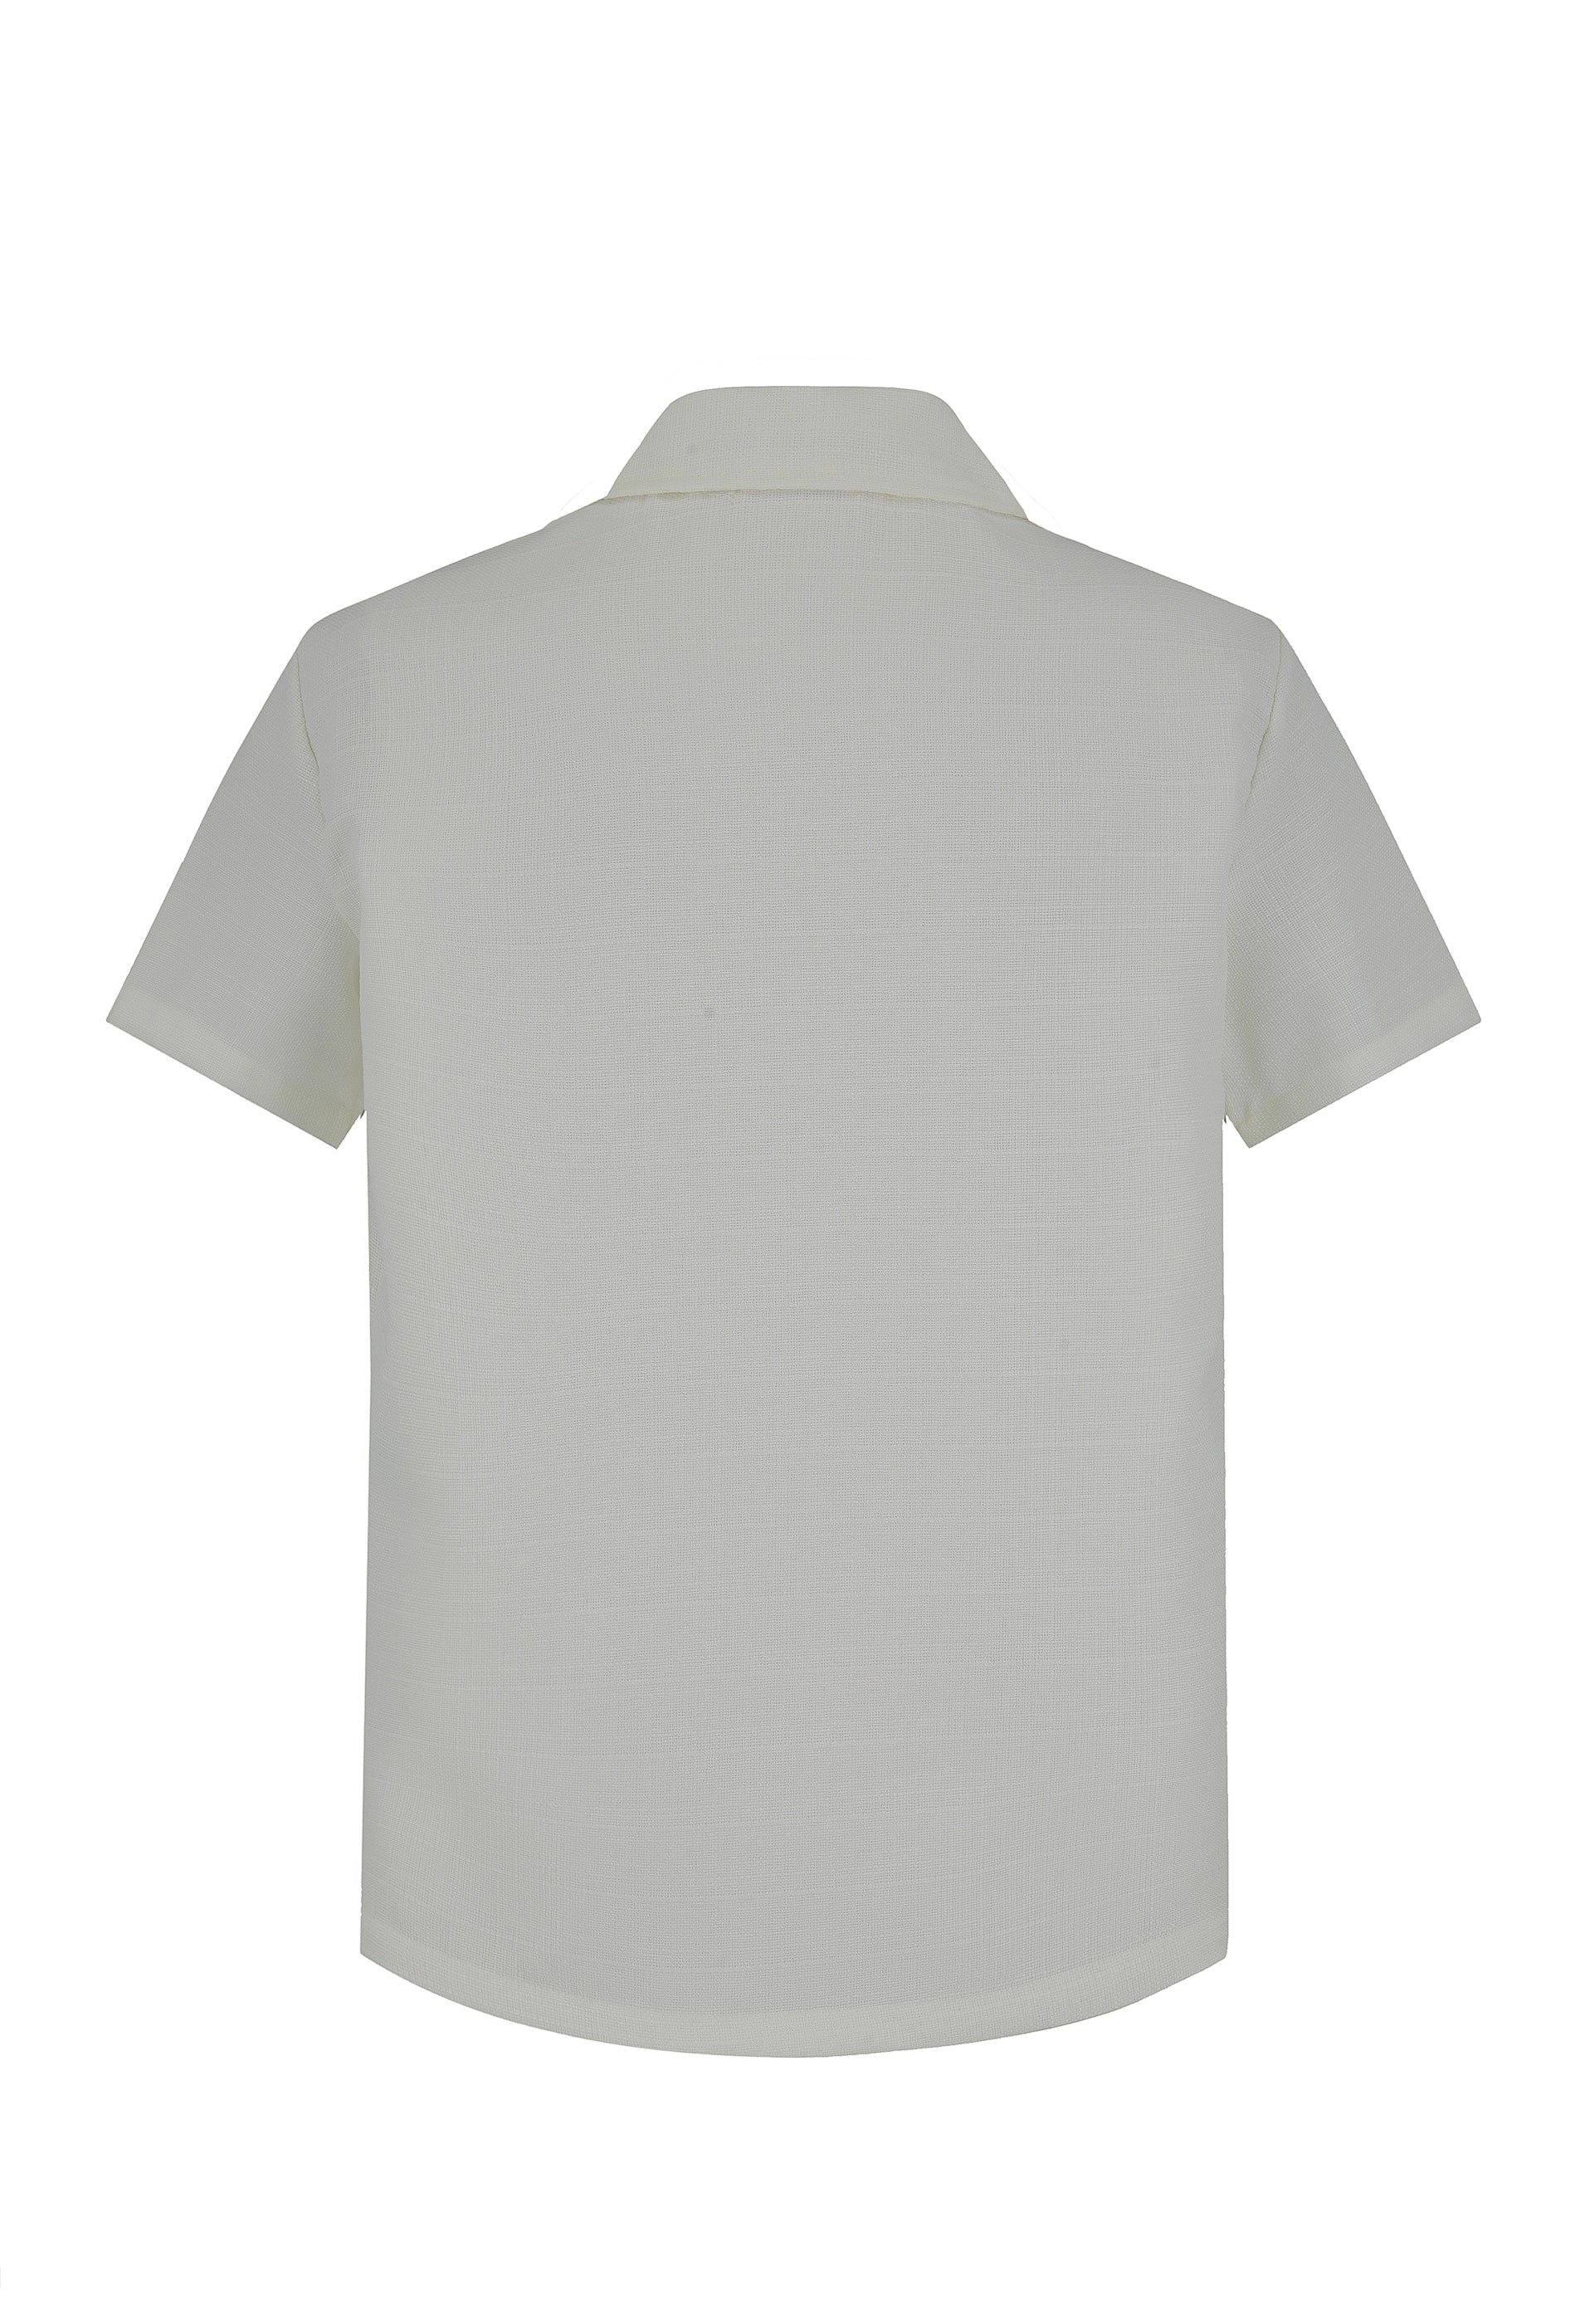 Plain short sleeve shirt shorts set